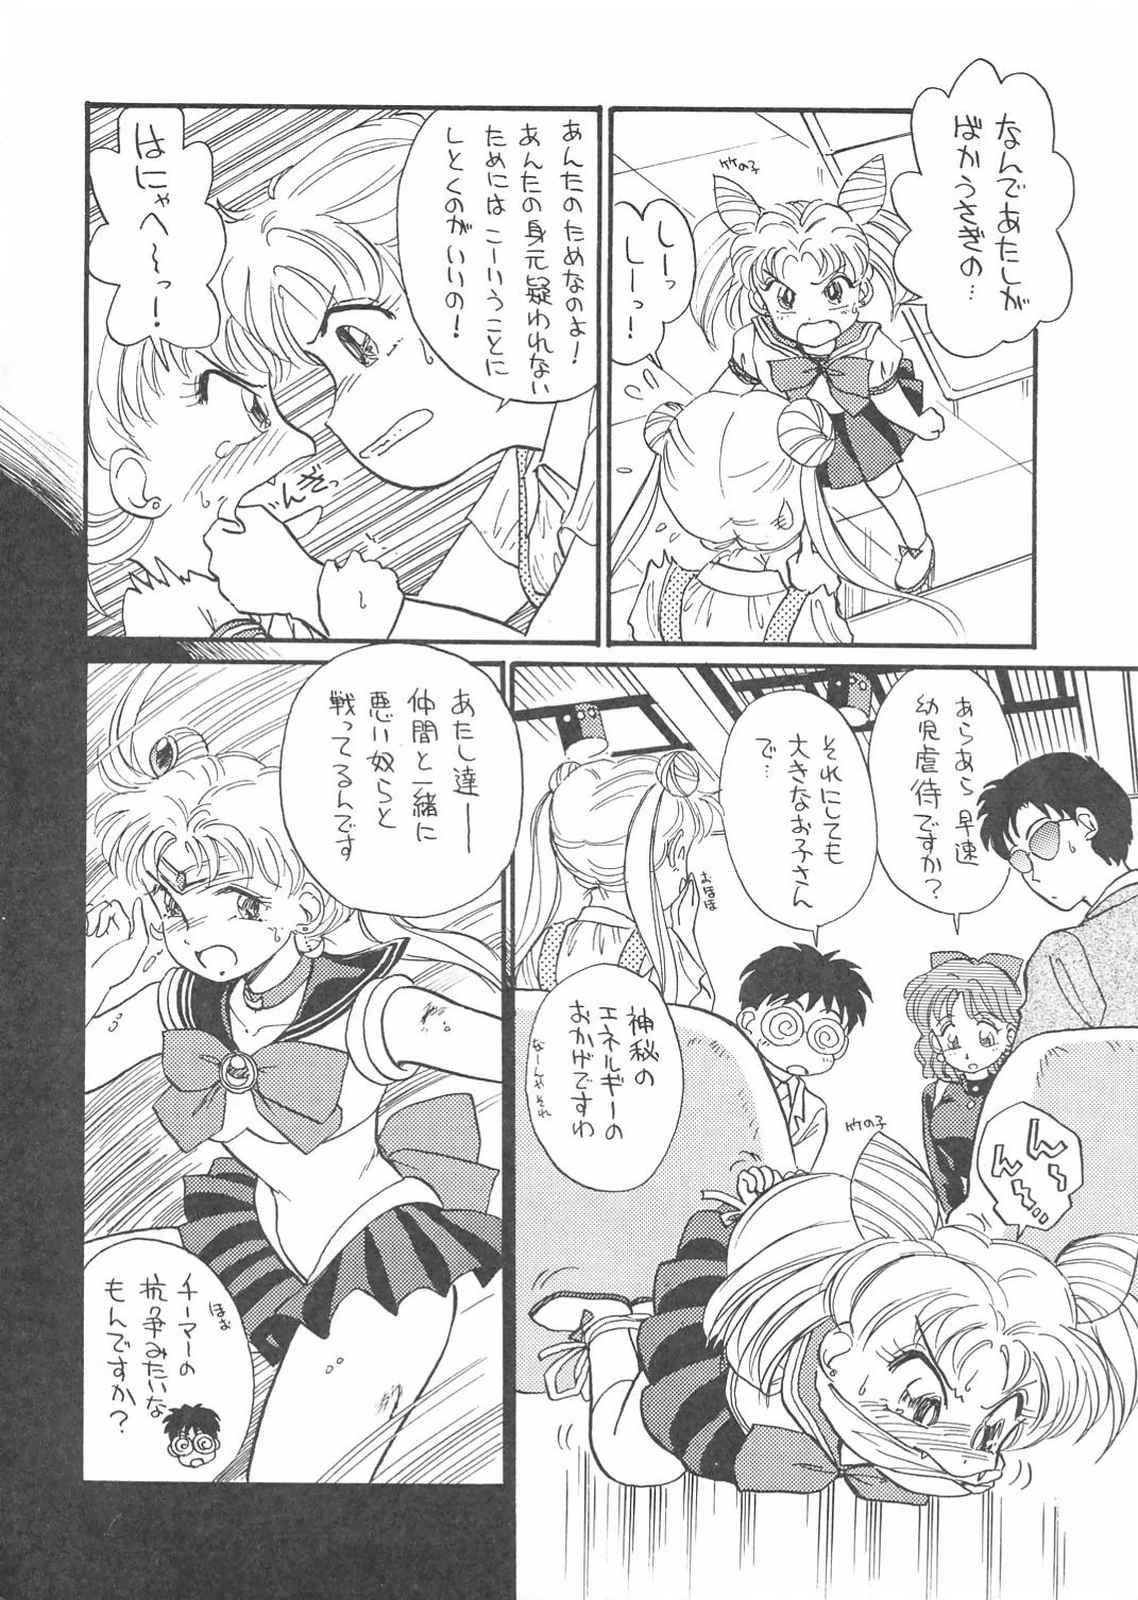 German Gekkou 3 - Sailor moon Orgame - Page 8